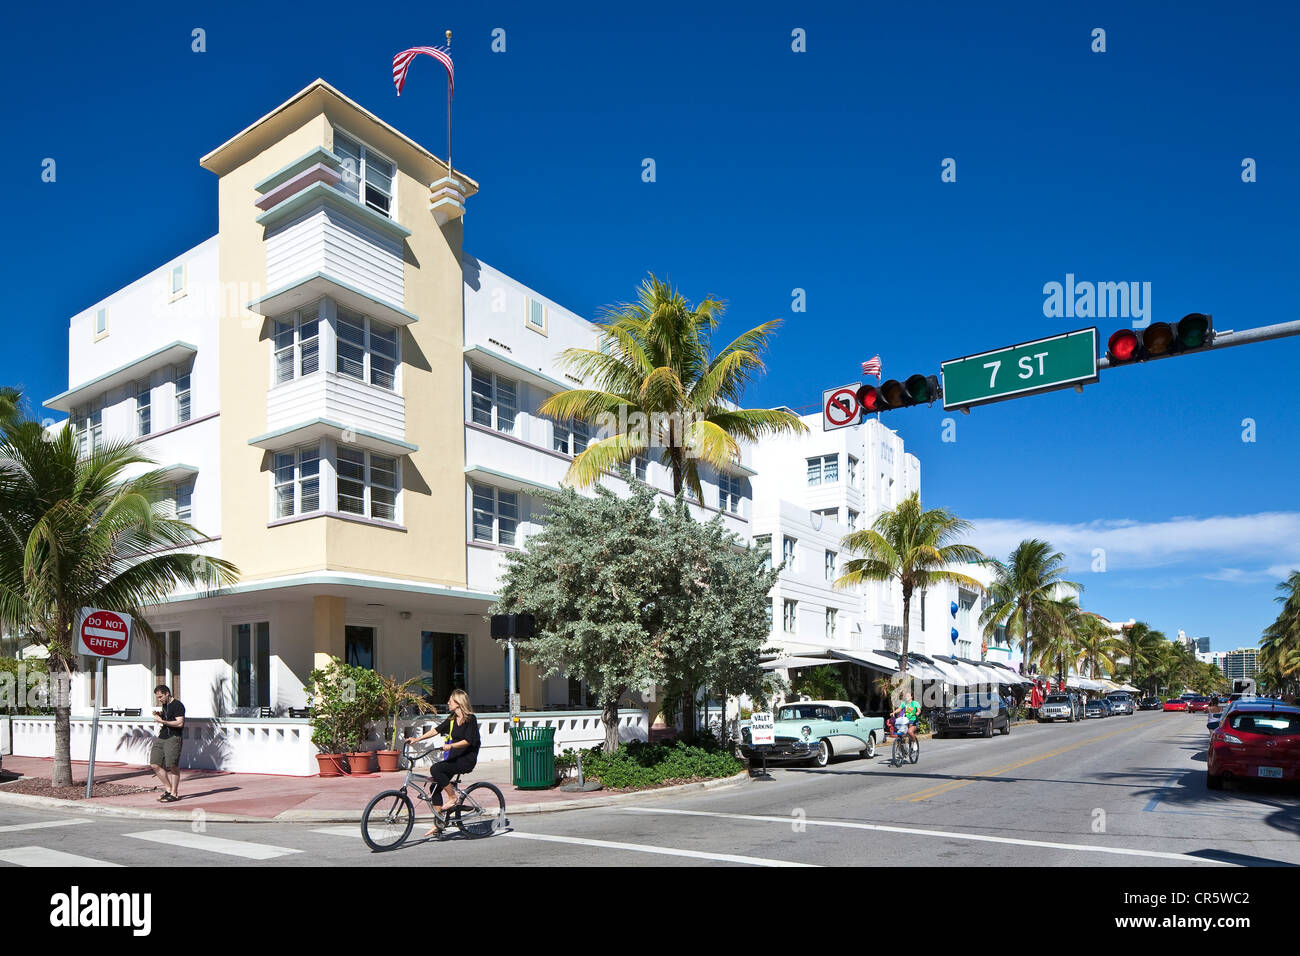 United States, Florida, Miami Beach, South Beach, le quartier Art déco, Ocean Drive au niveau de la 7e rue, les cyclistes Banque D'Images